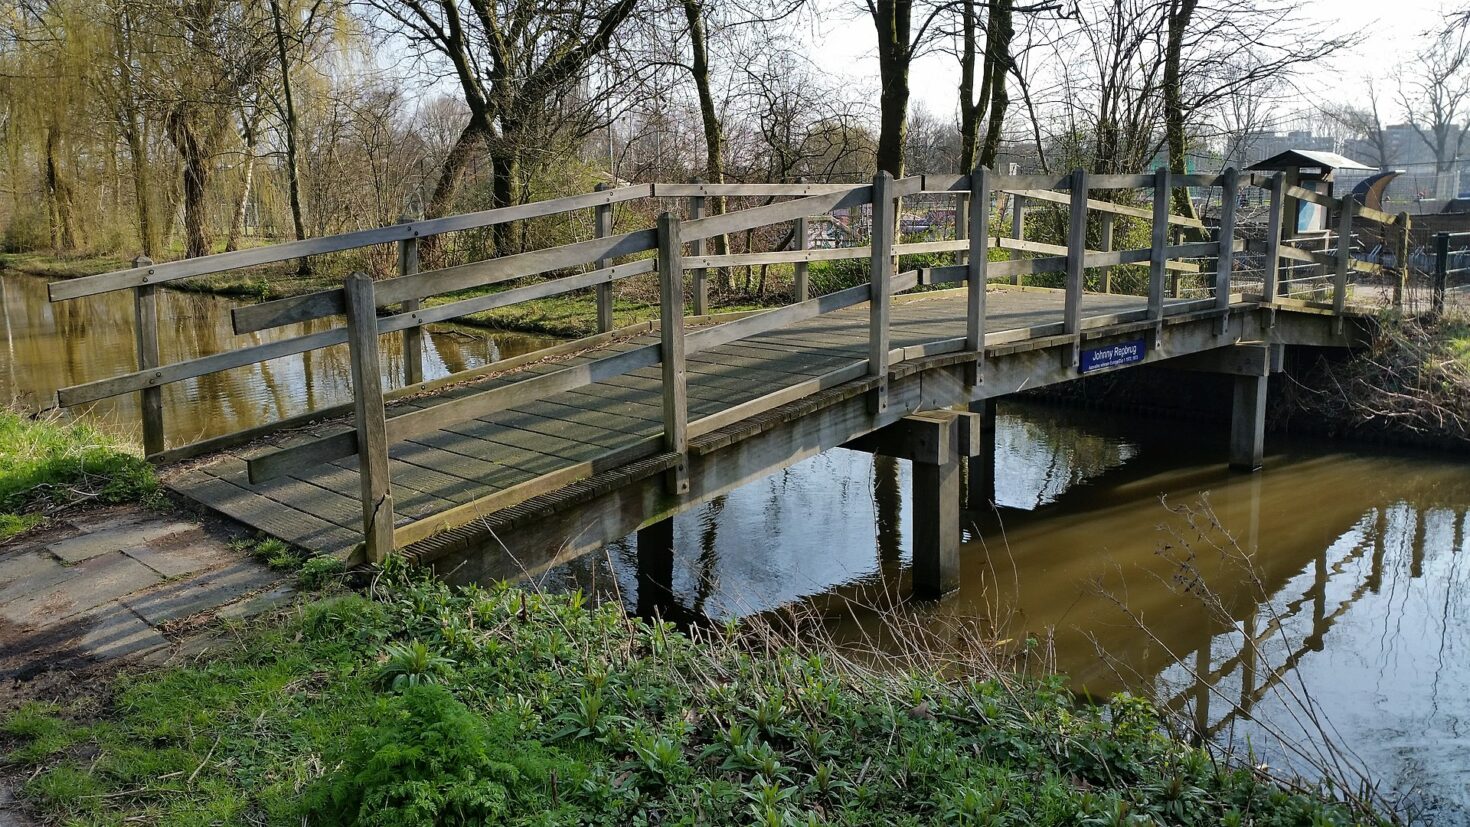 Het houten bruggetje in de Watergraafsmeer dat is vernoemd naar Johnny Rep